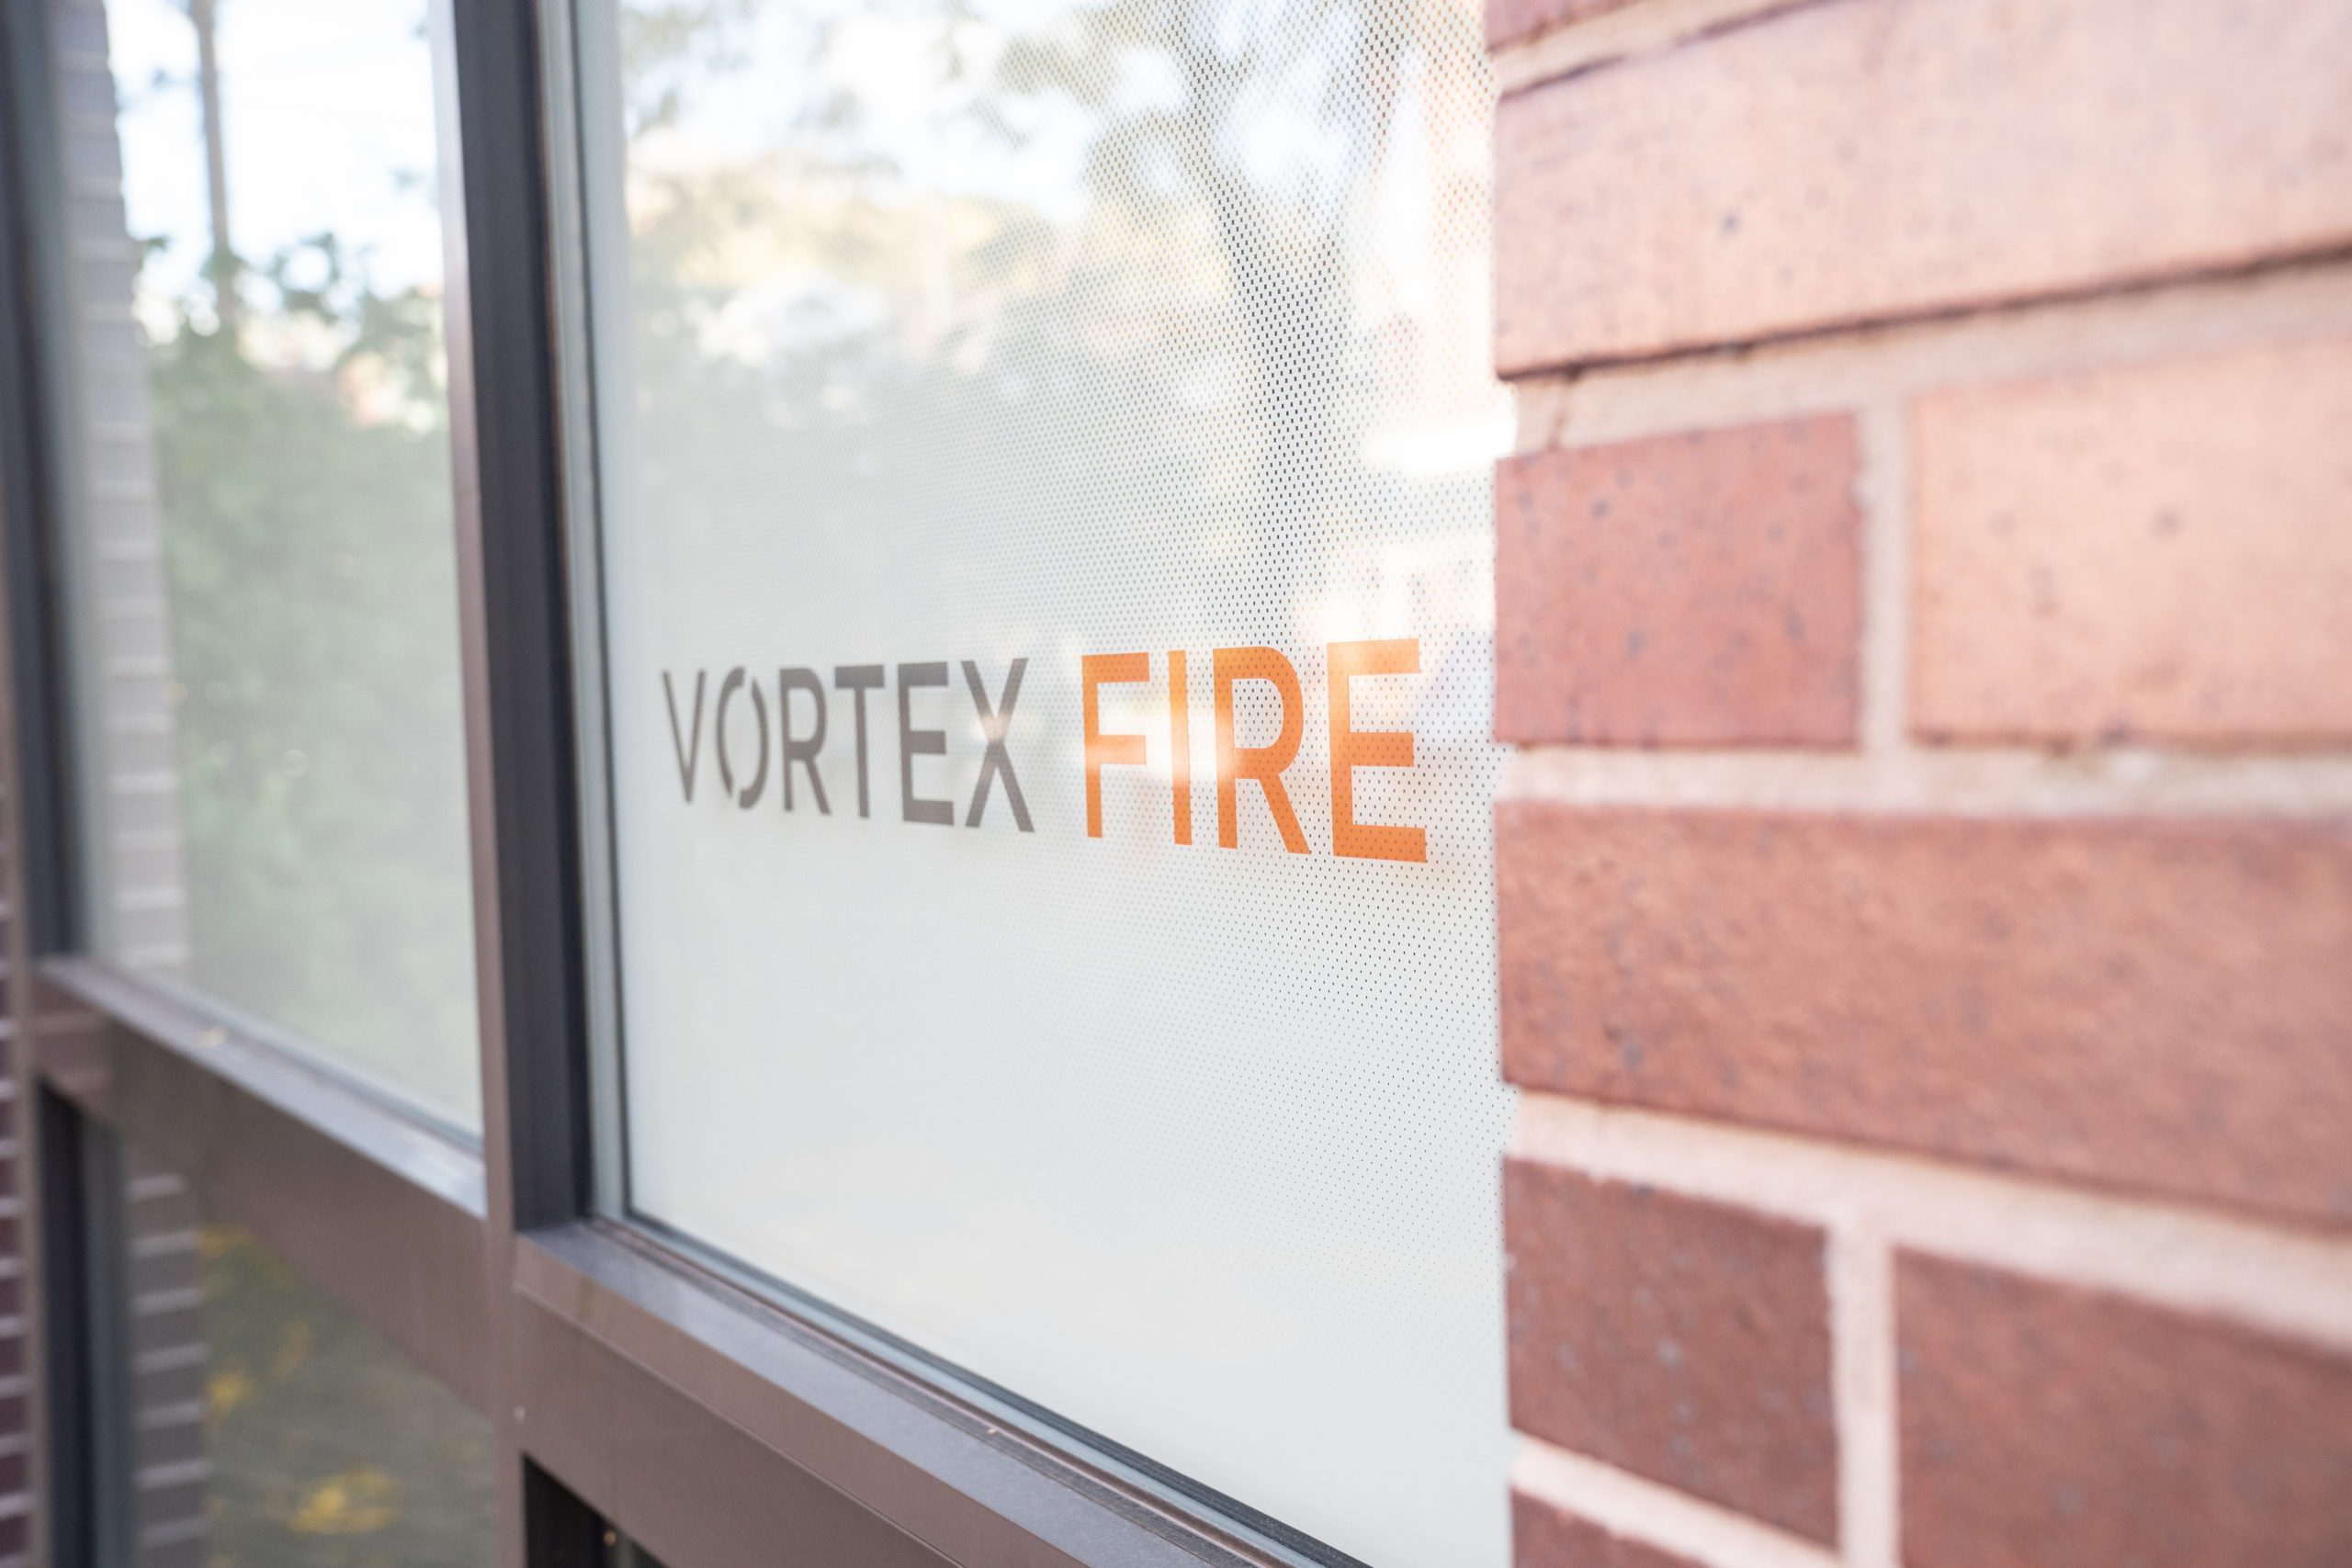 Vortex Fire Building